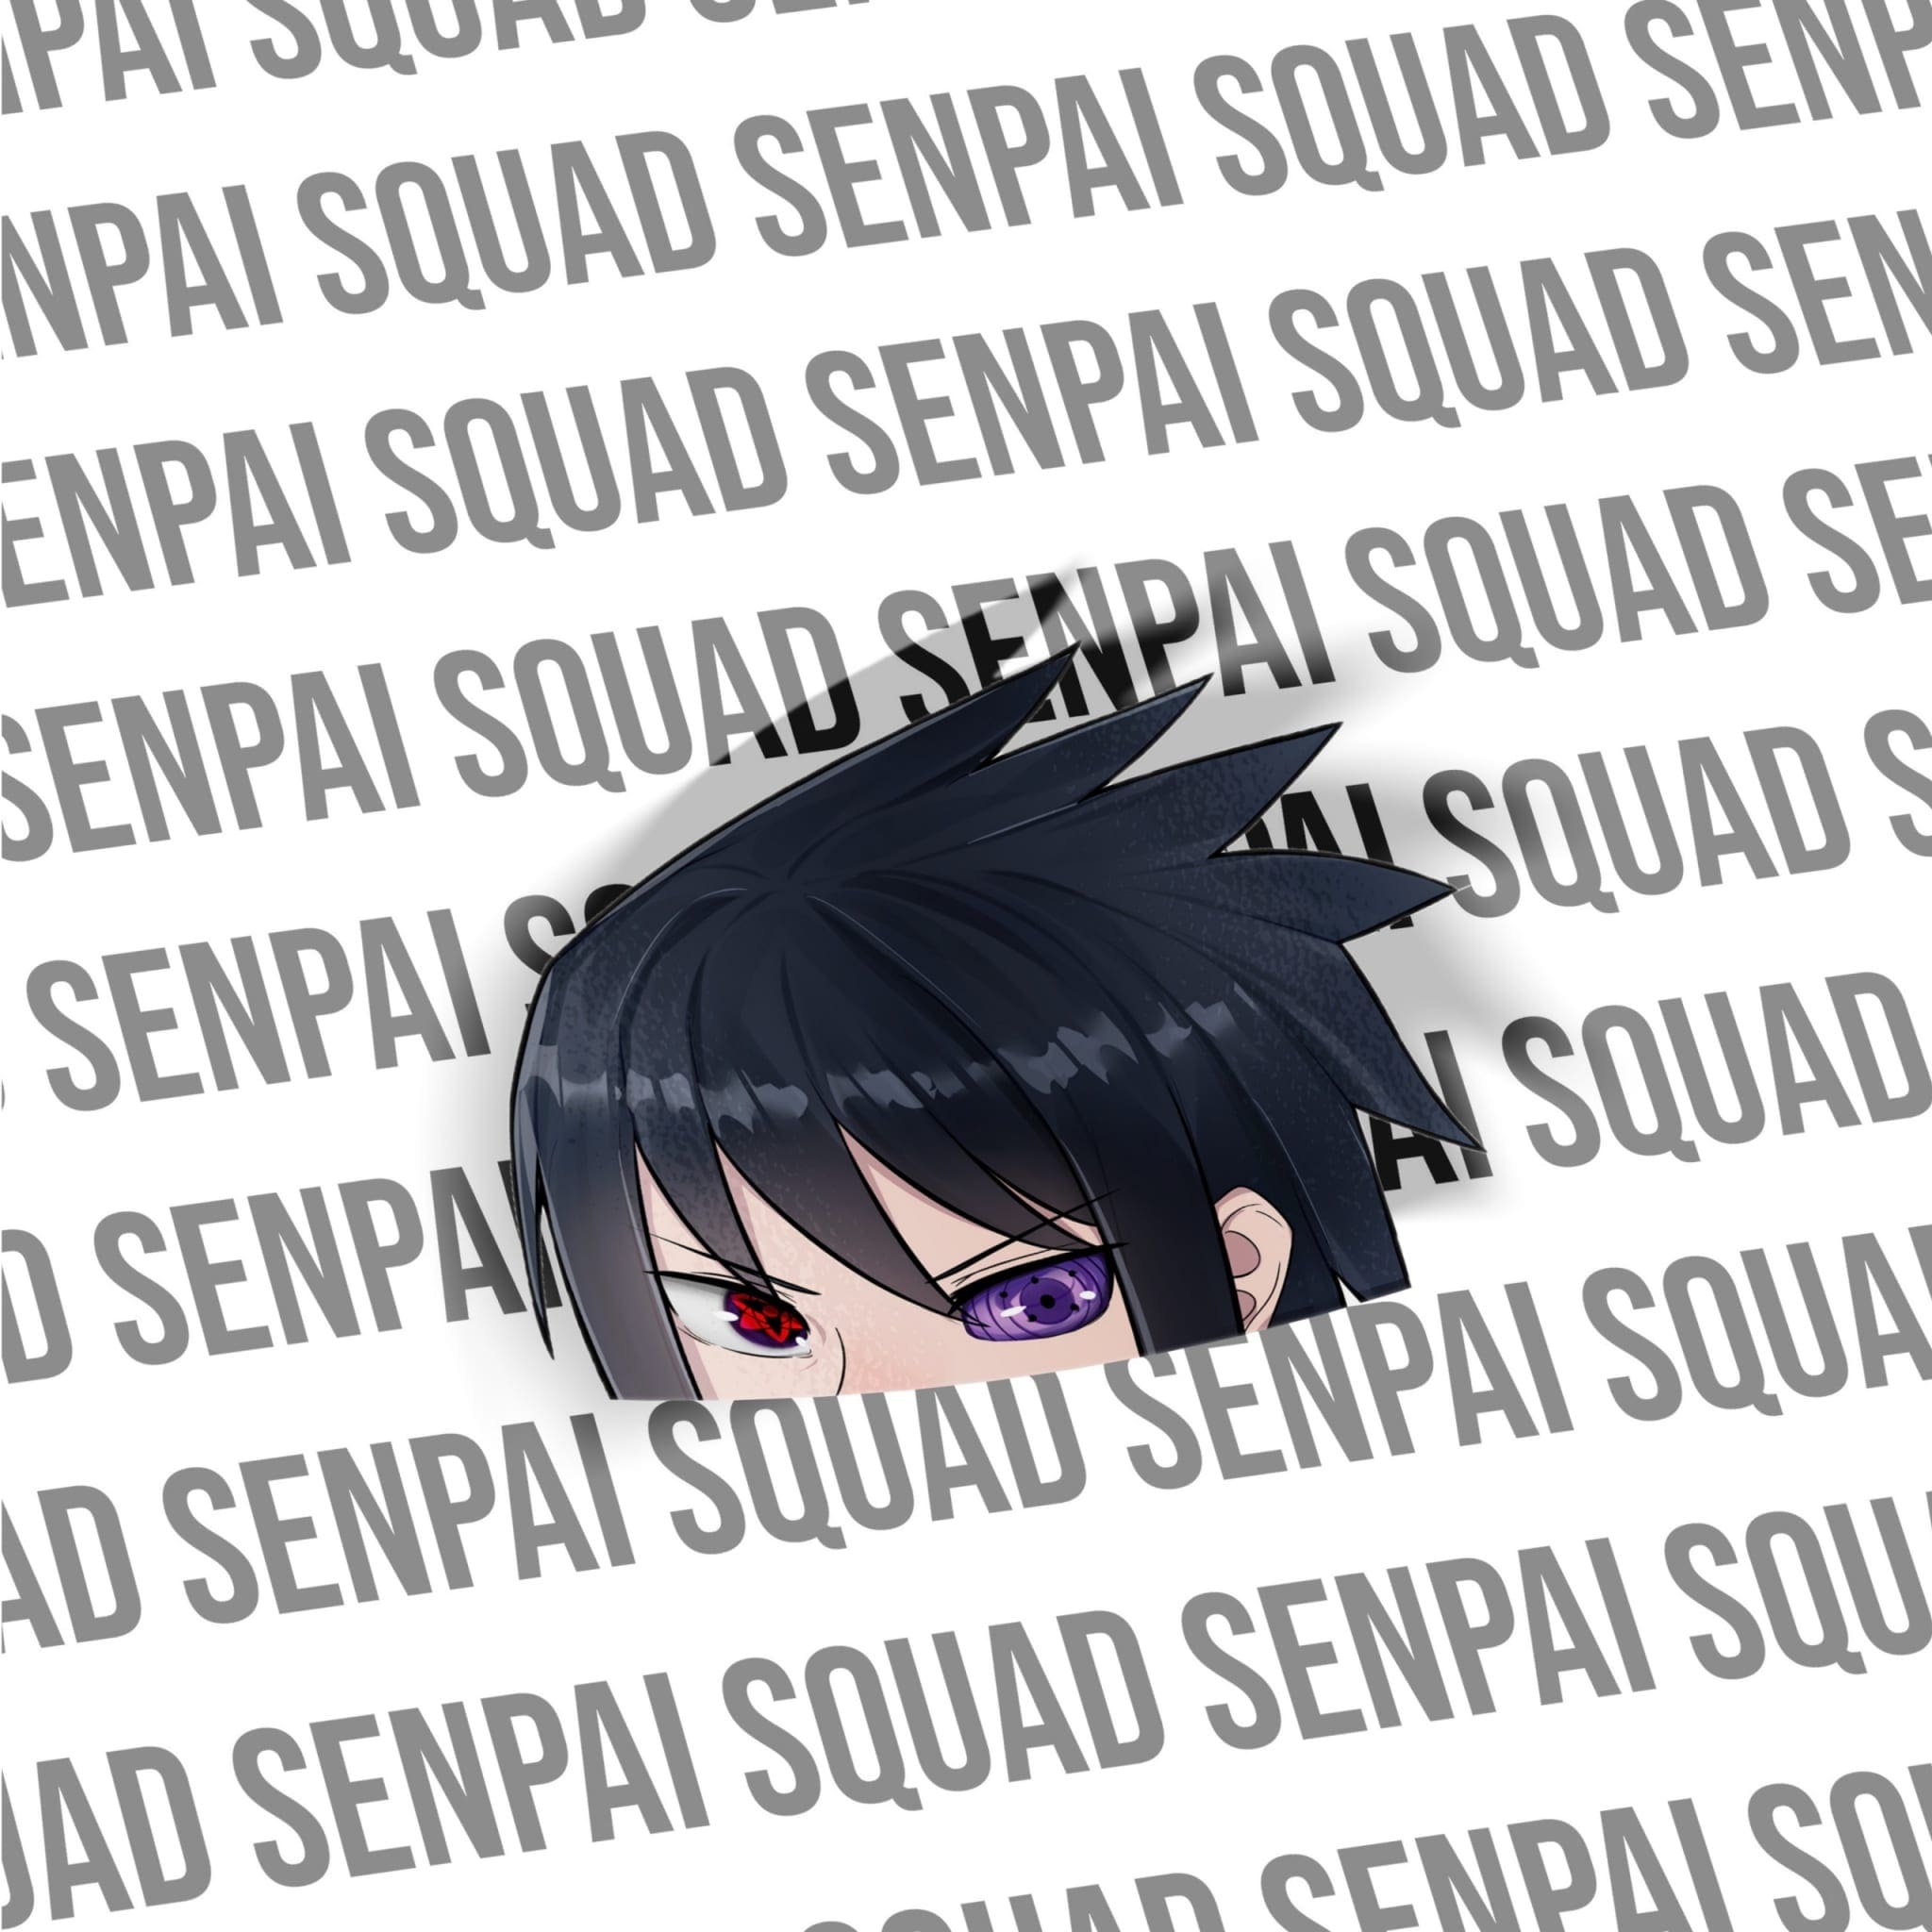 Senpai squad party